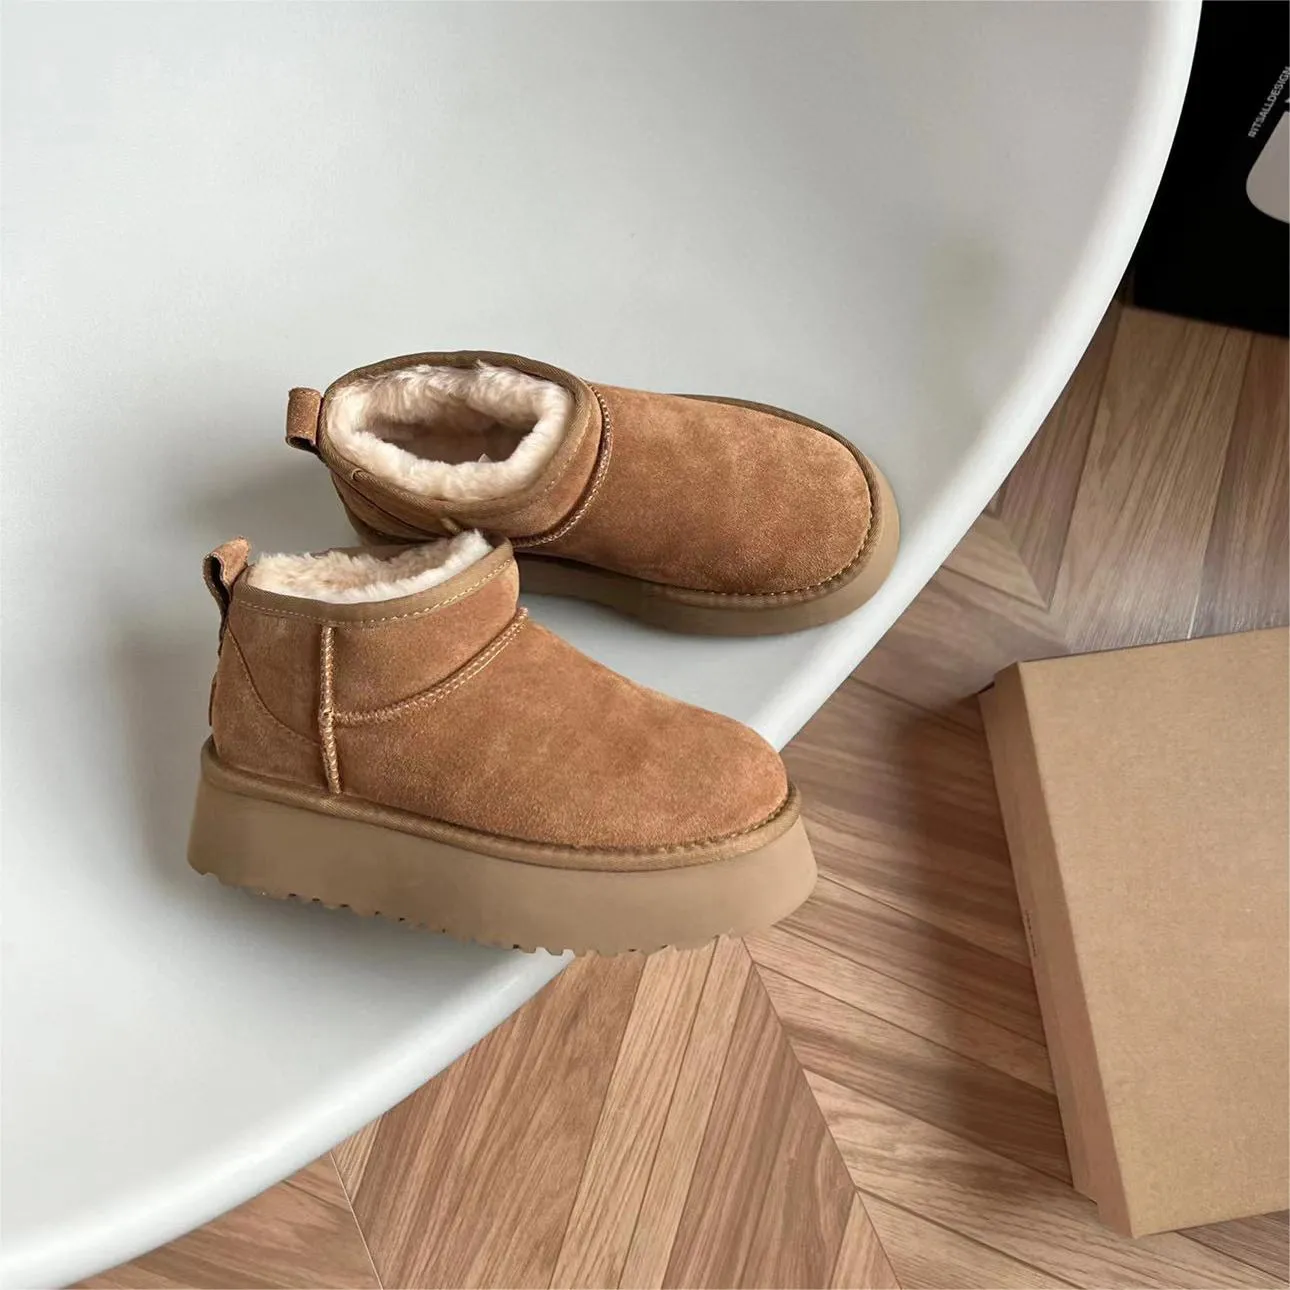 Çizmeler Klasik Ultra Mini Platform Kadın Çizme Avustralya Kış Kar Sıcak Çizmeler Mat Kürk Süet Tasarımcı Ayak Bileği Patik Boyut 35-42